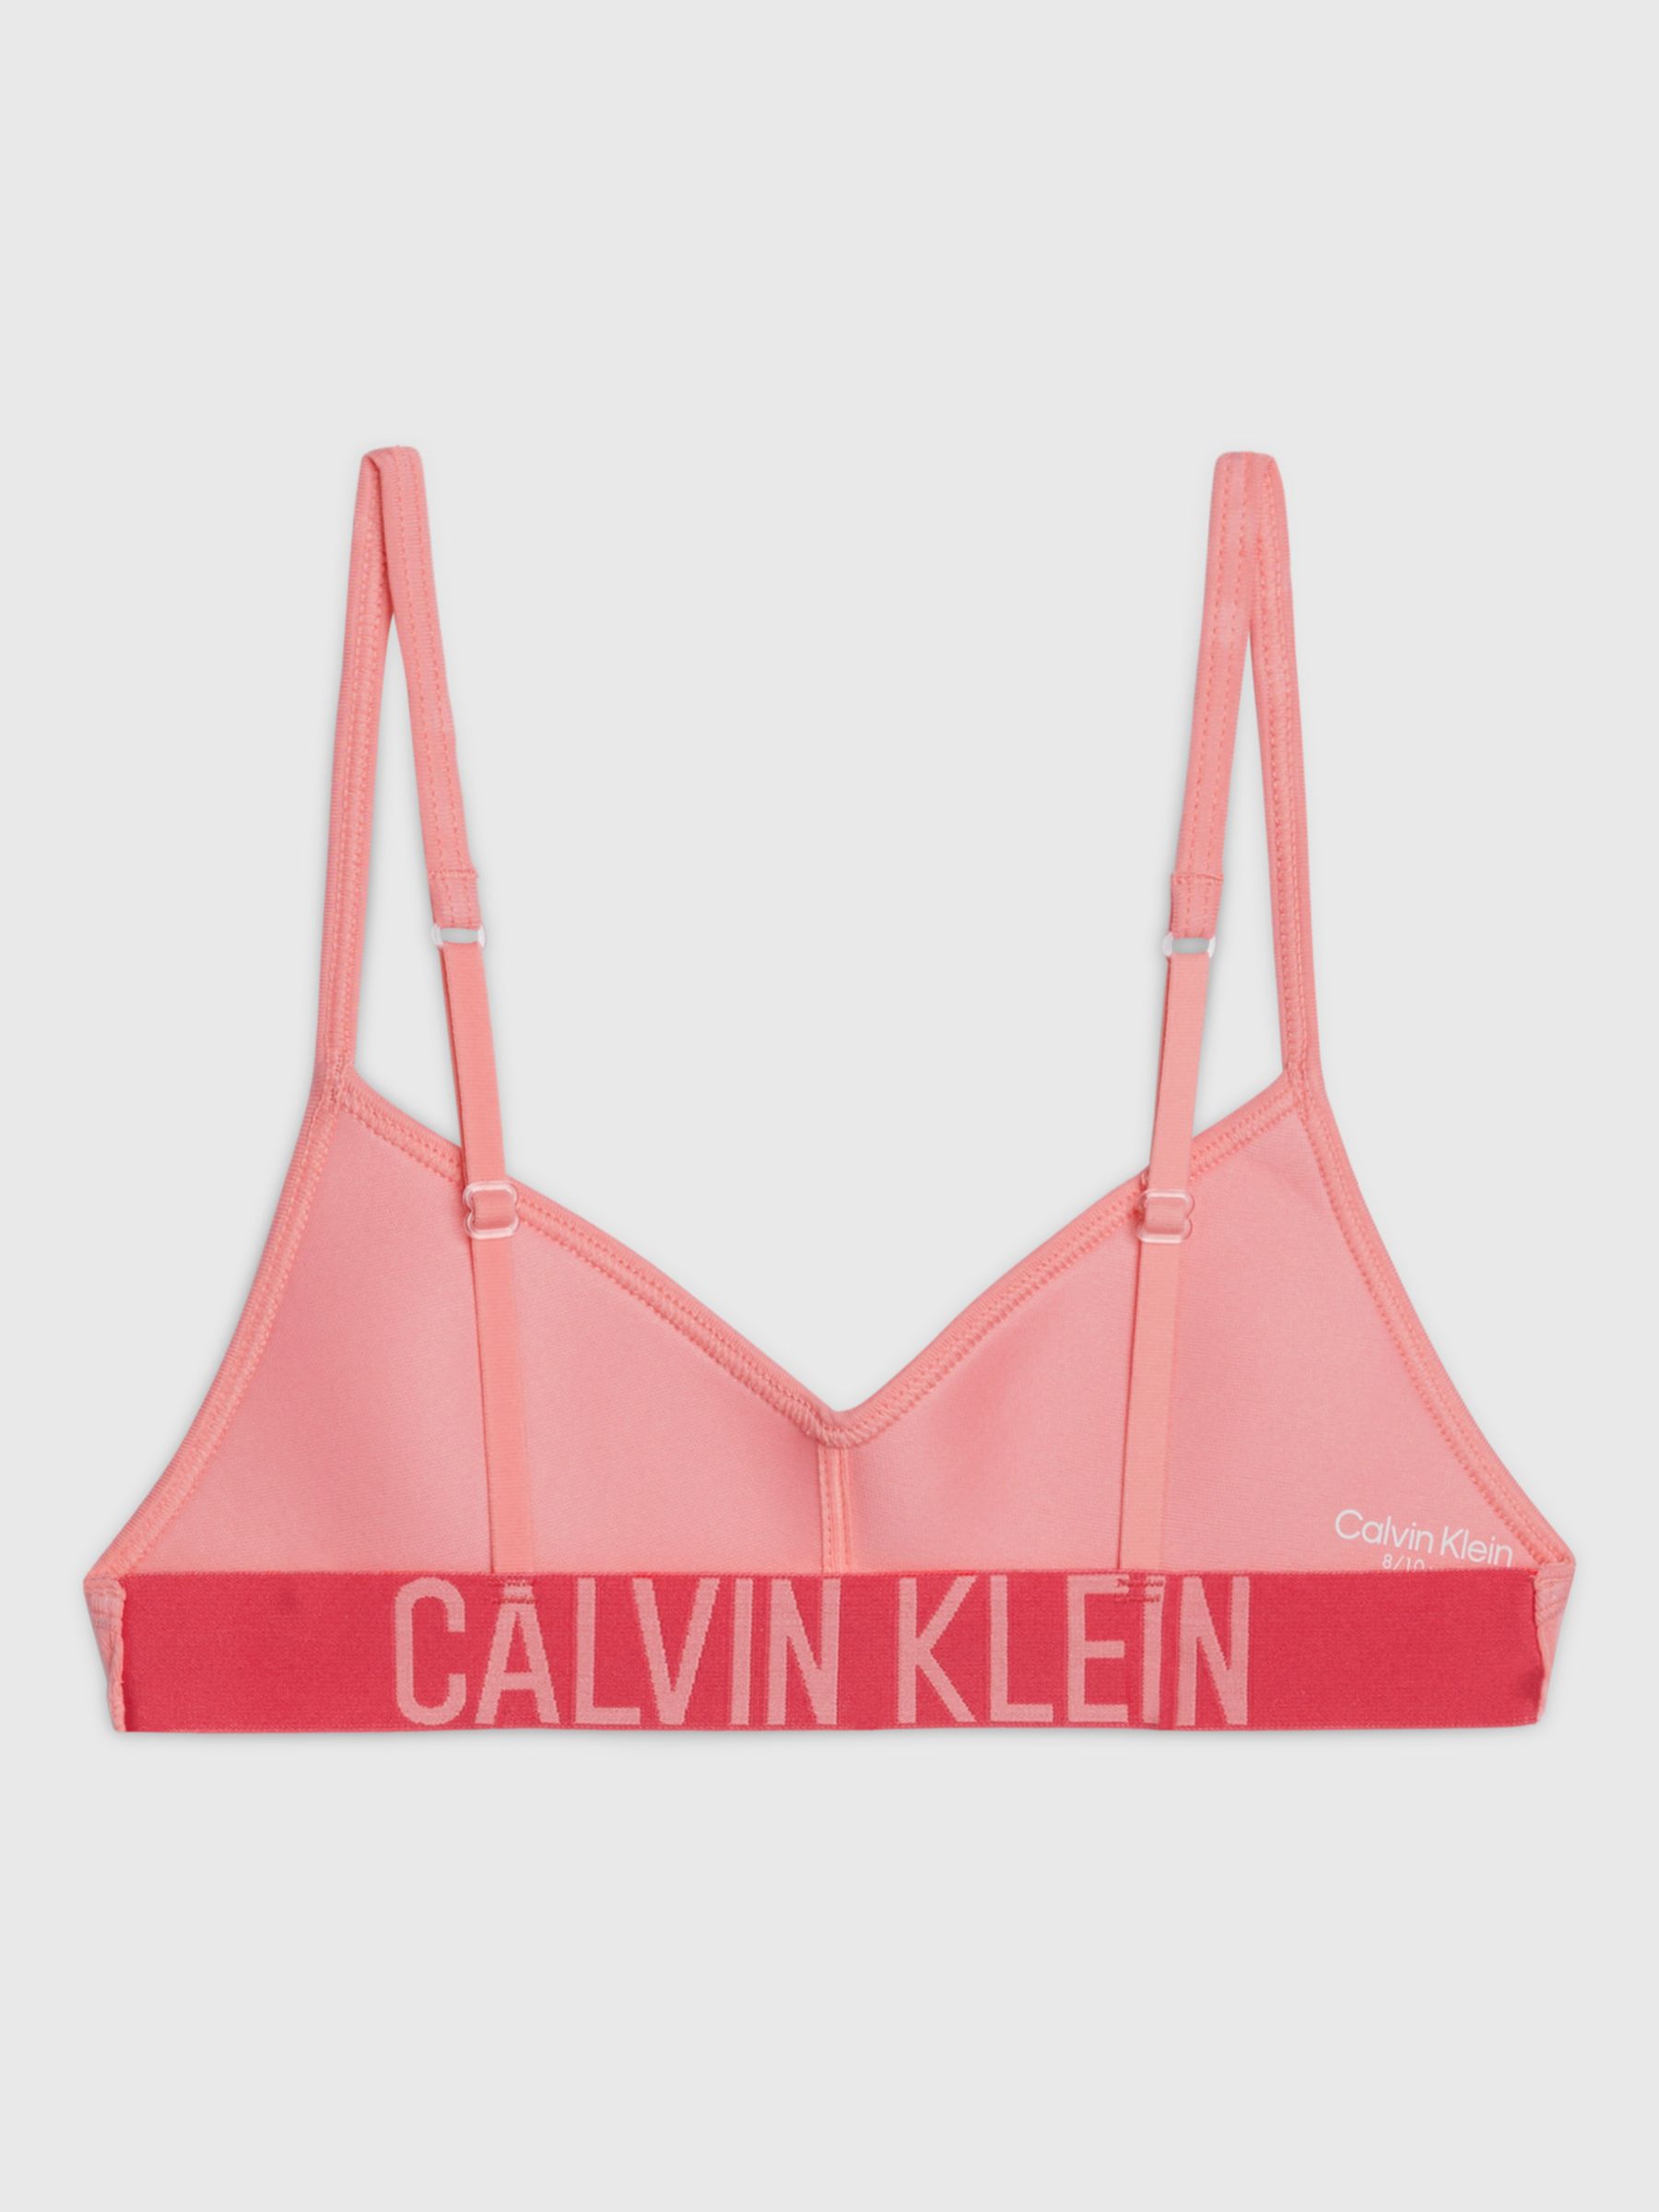 Calvin Klein Kids' Slogan Bra, Pink Coral, 10-12Y